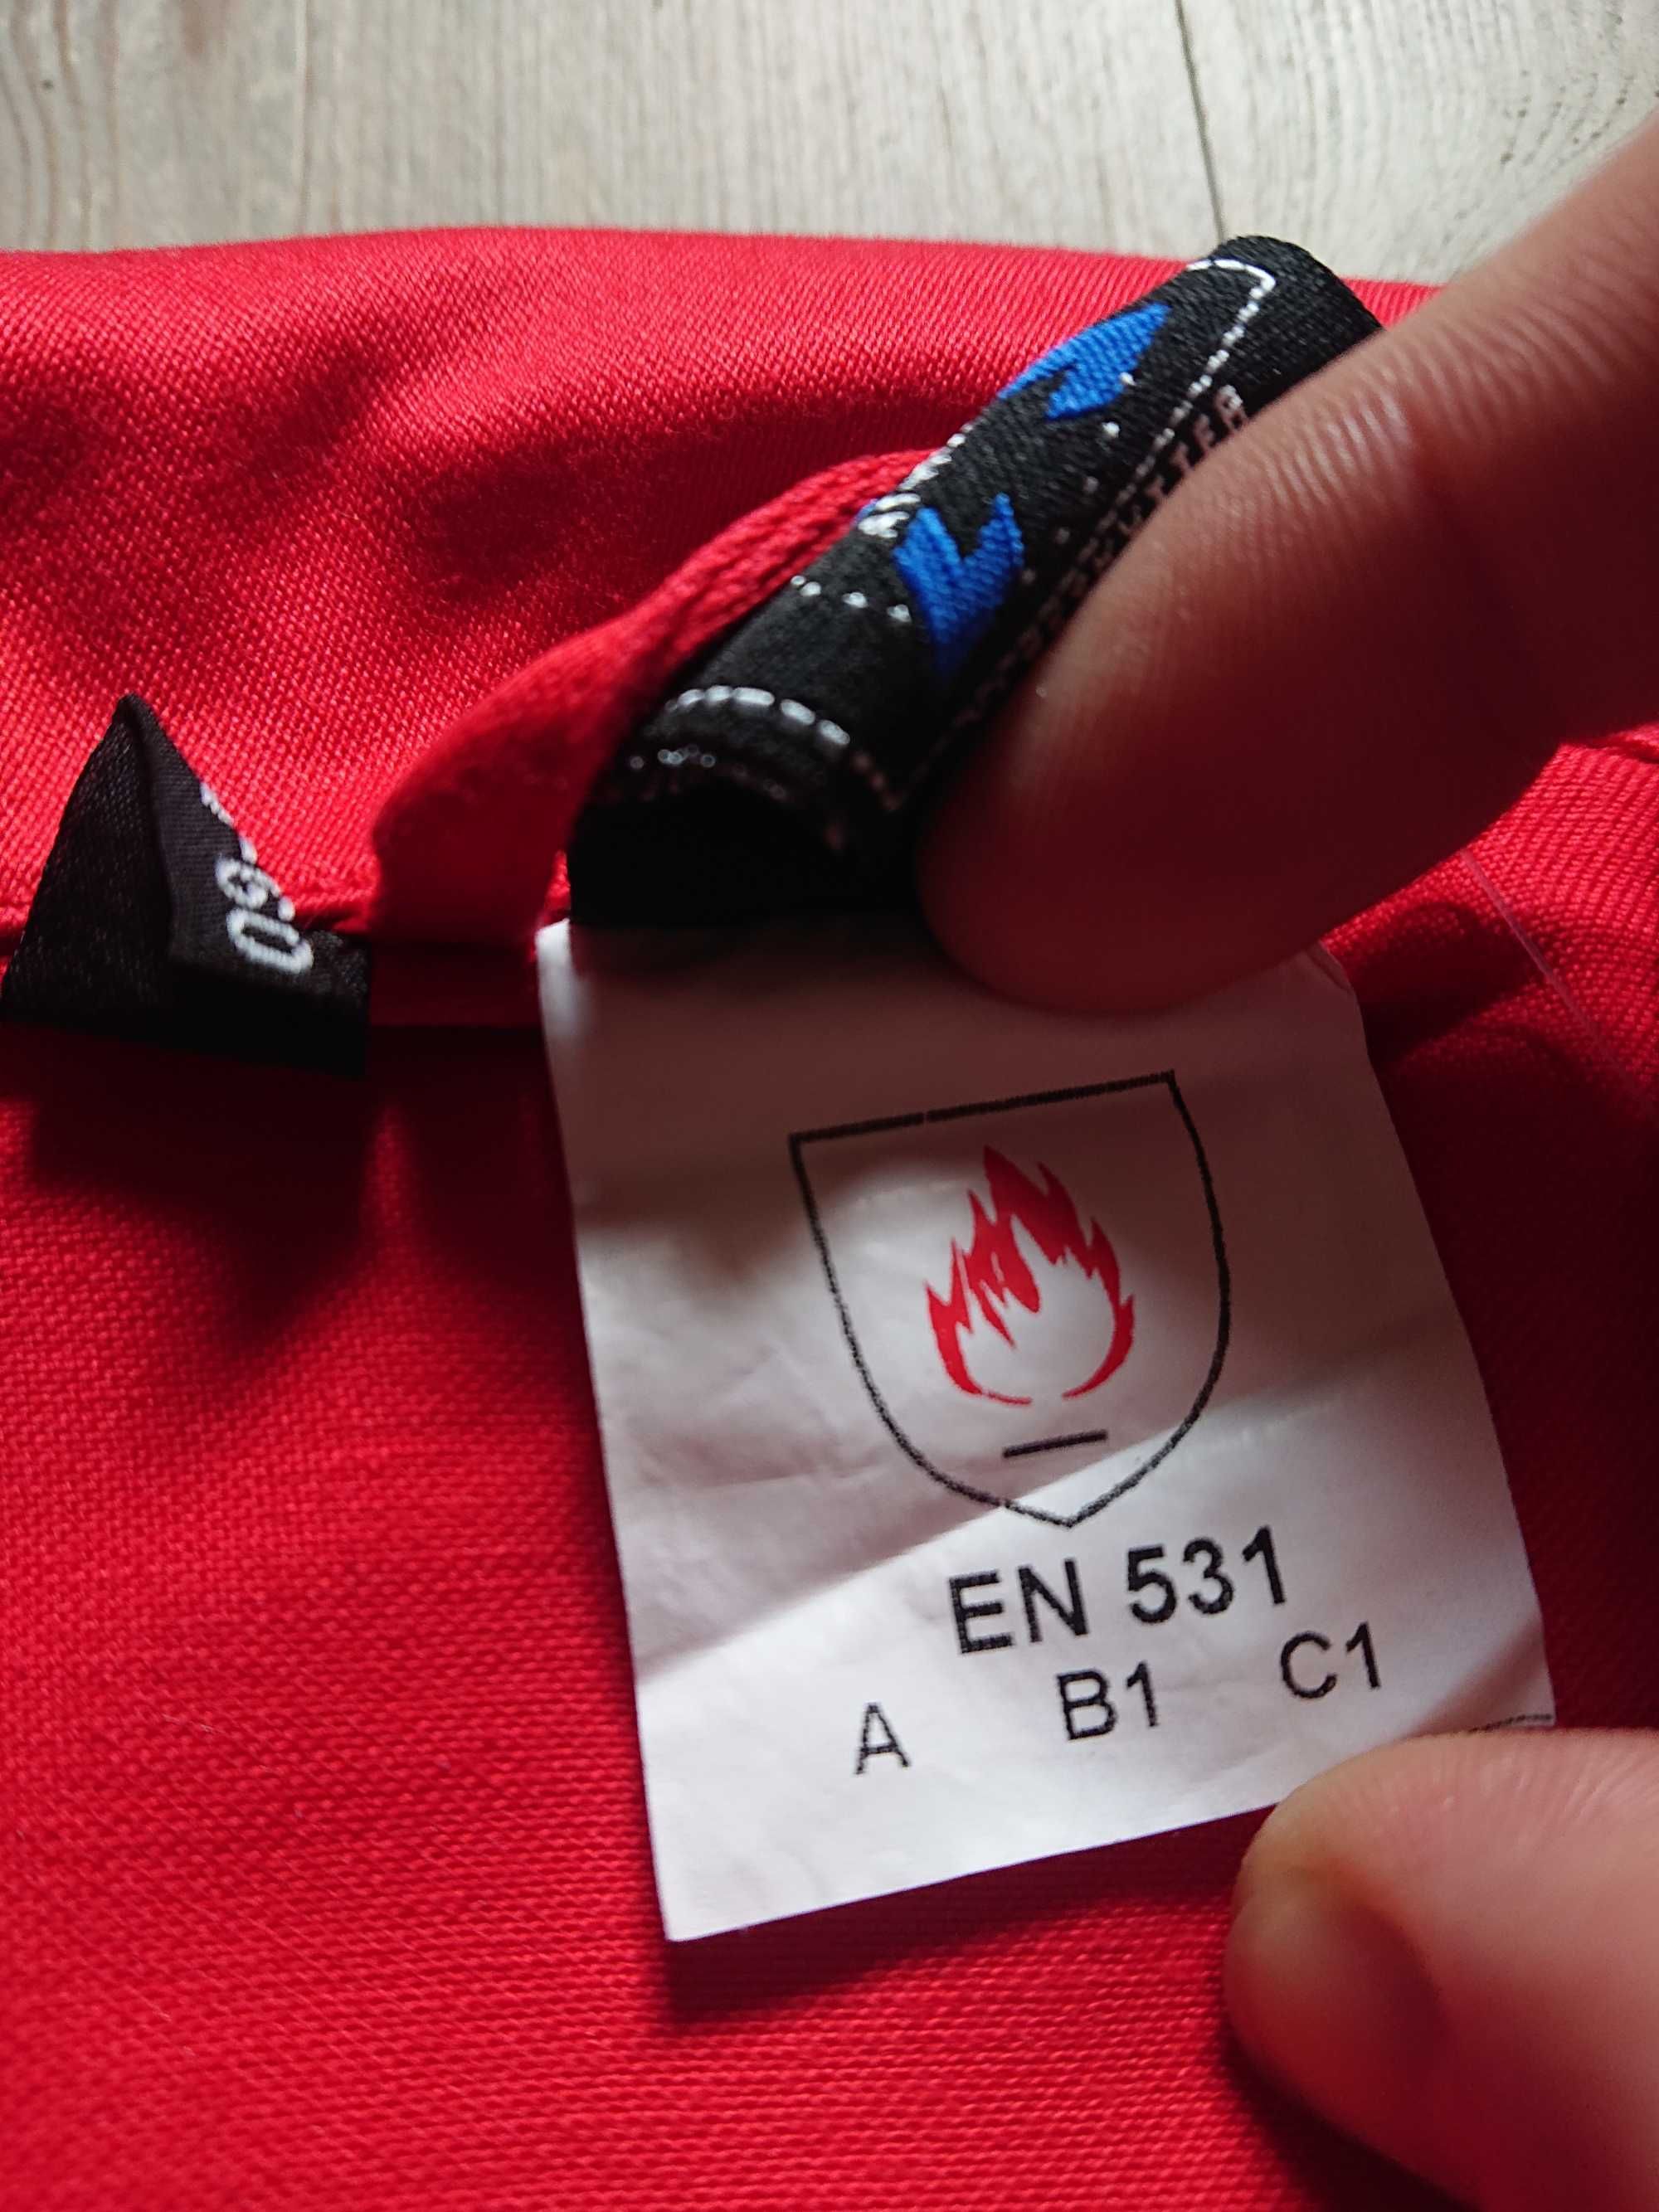 Bluza spawalnicza robocza czerwona UNIVERN nowa XL niepalna - M do XXL